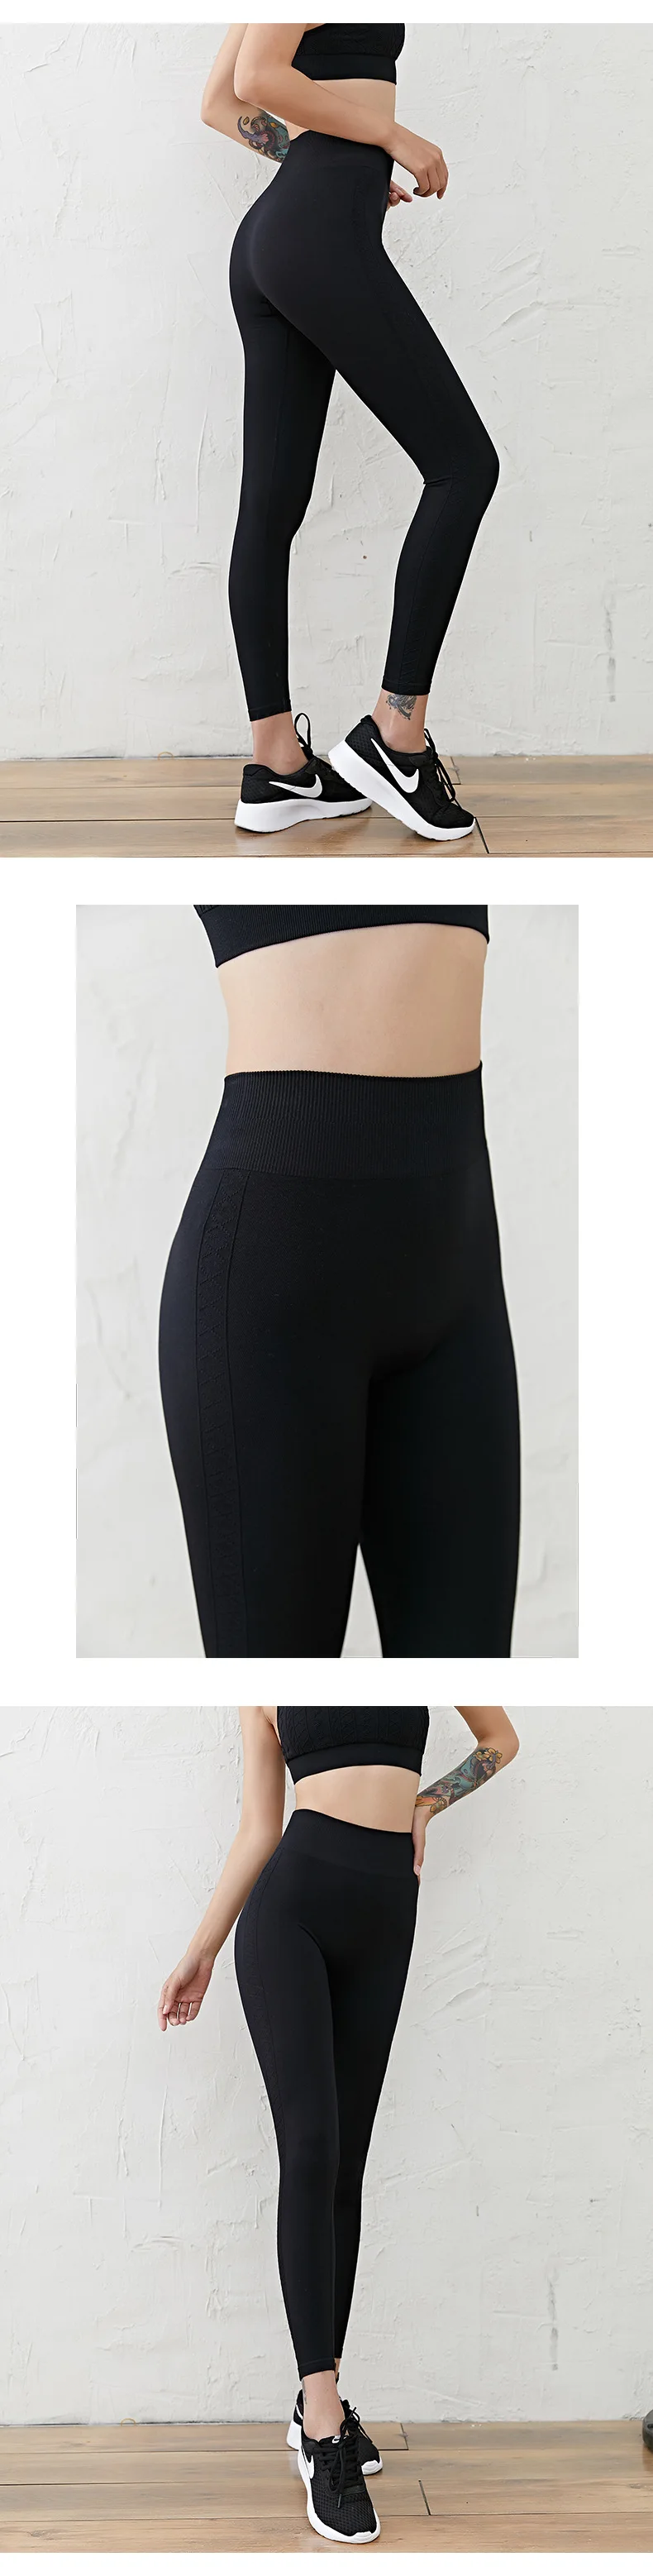 Штаны для фитнеса, йоги, женские спортивные Леггинсы с высокой талией, обтягивающие, тонкие, тянущиеся, Gymwear, для бега, персикового цвета, для хип-тренировок, спортивная одежда